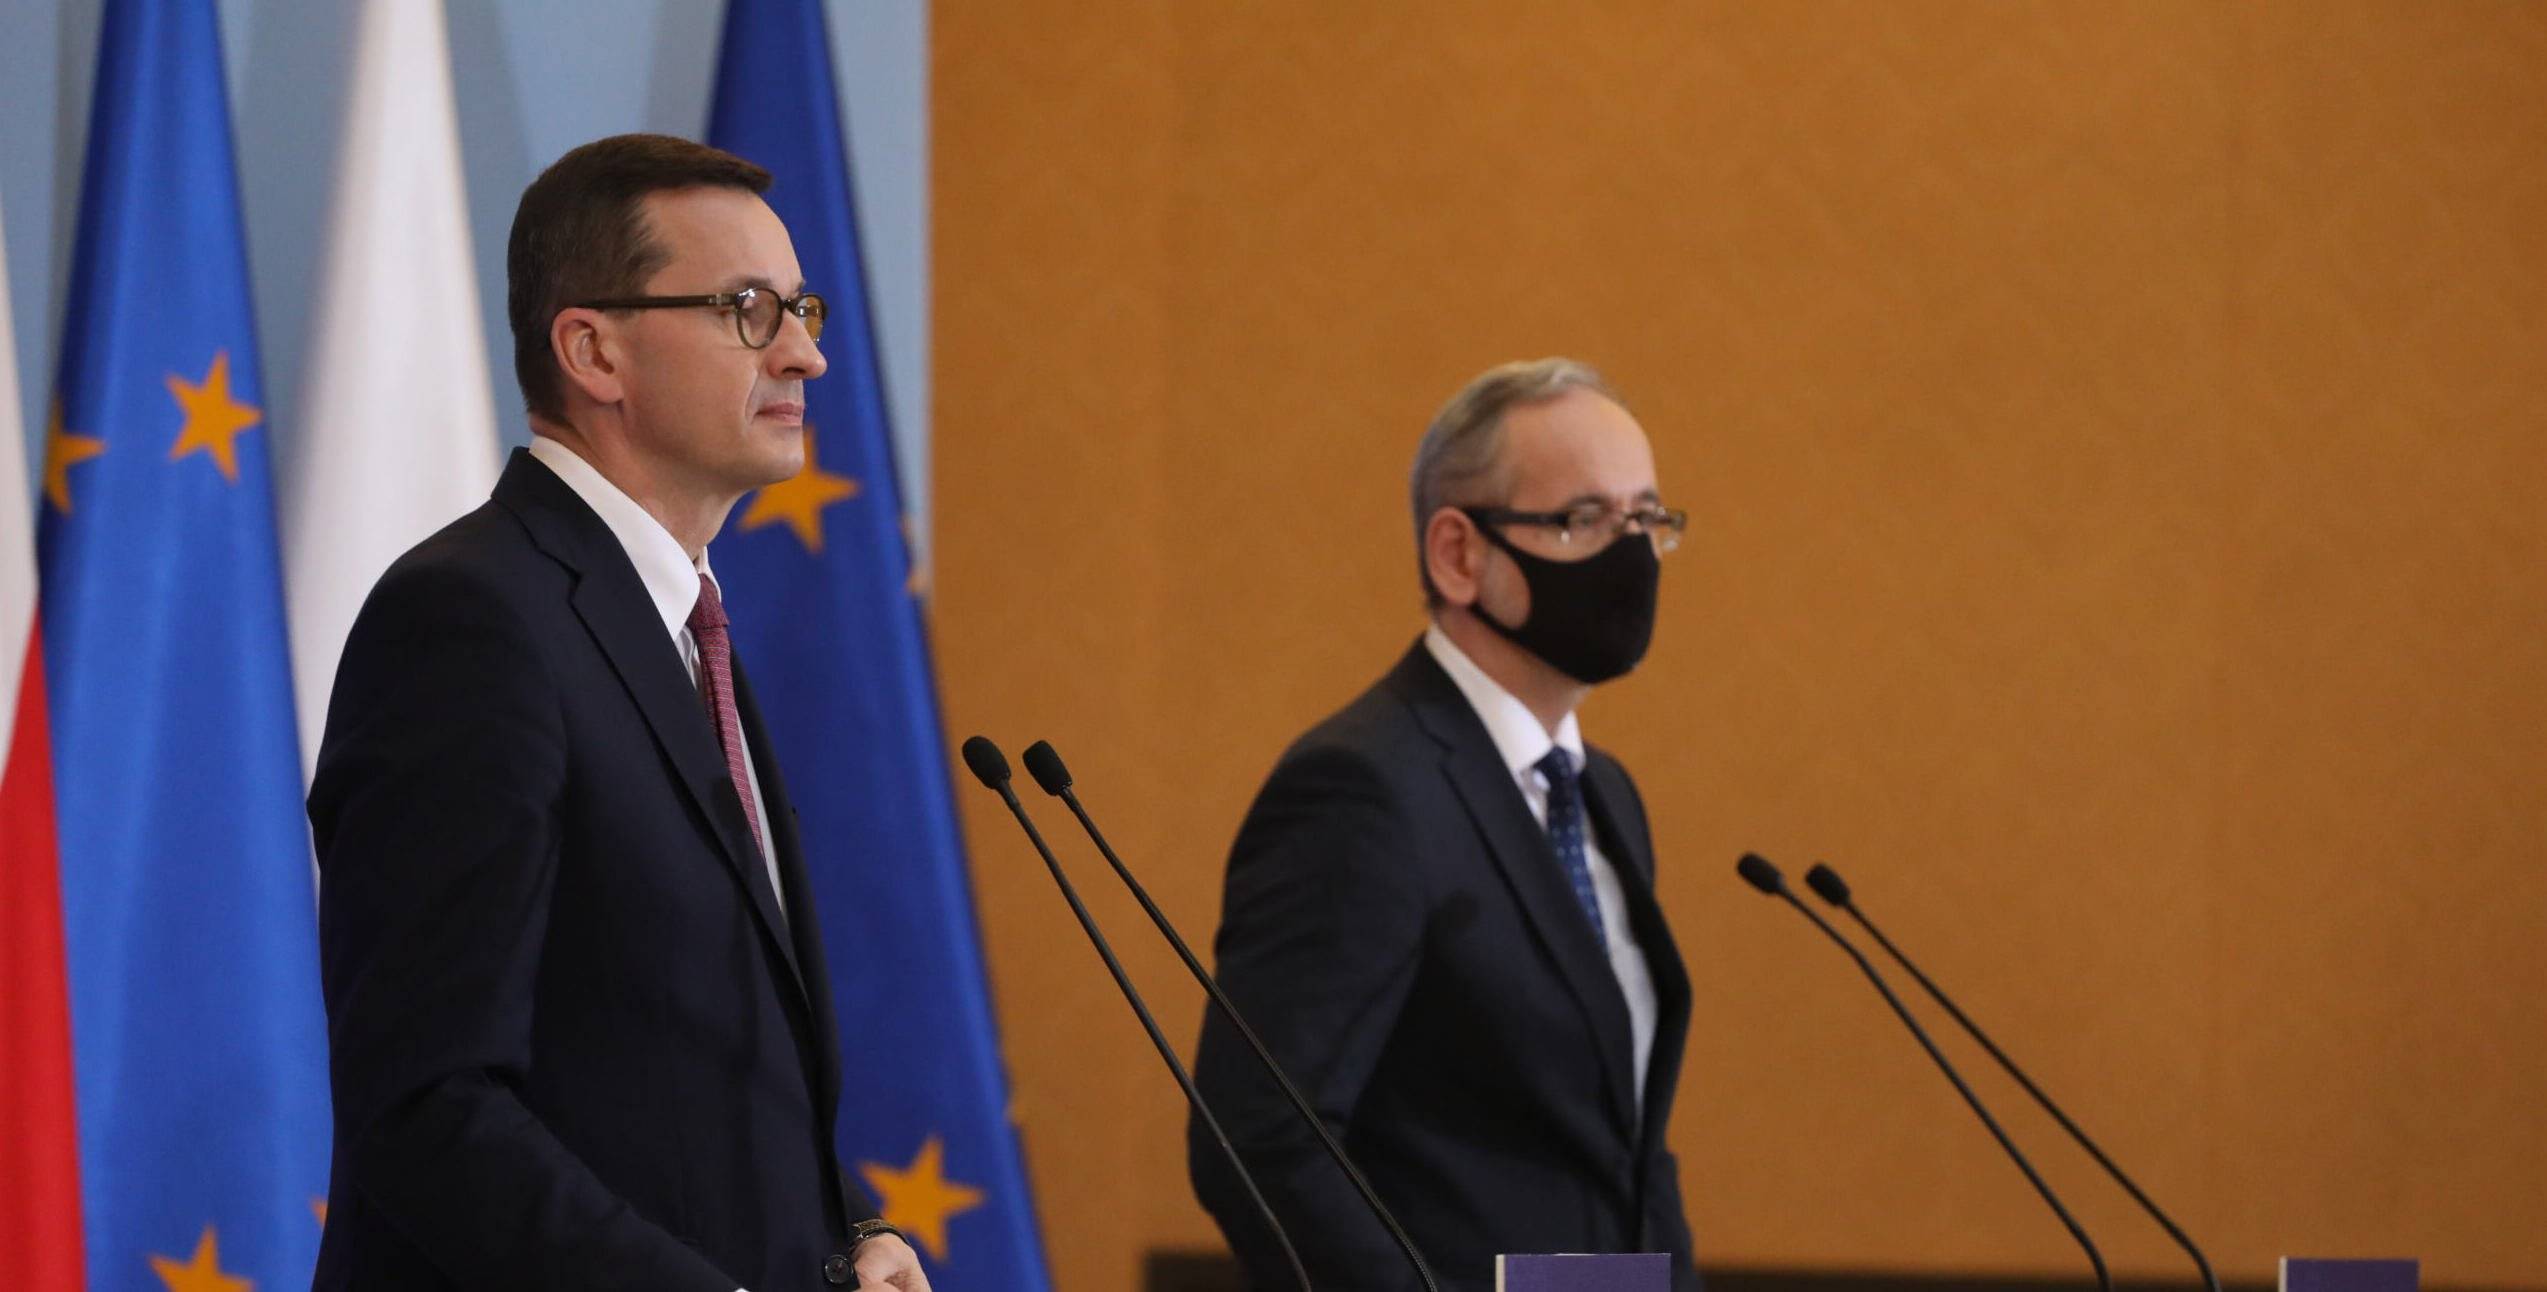 Morawiecki i Niedzielski stoją przed mikrofonami